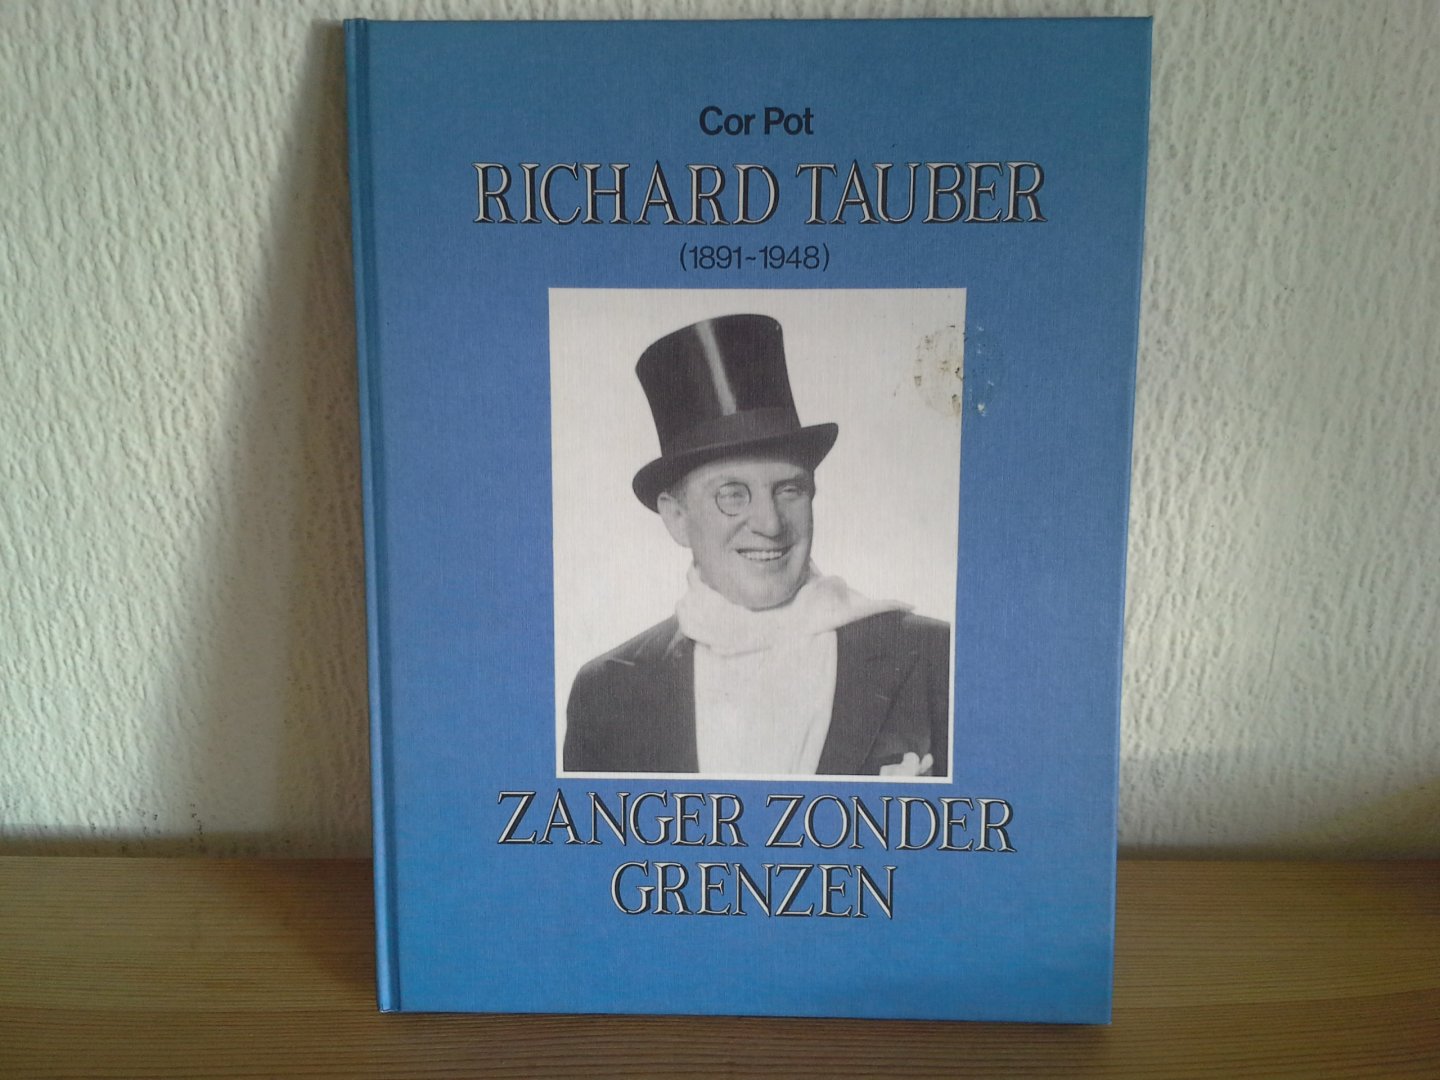 COR POT - RICHARD TAUBER 1891-1948 ZANGER ZONDER GRENZEN